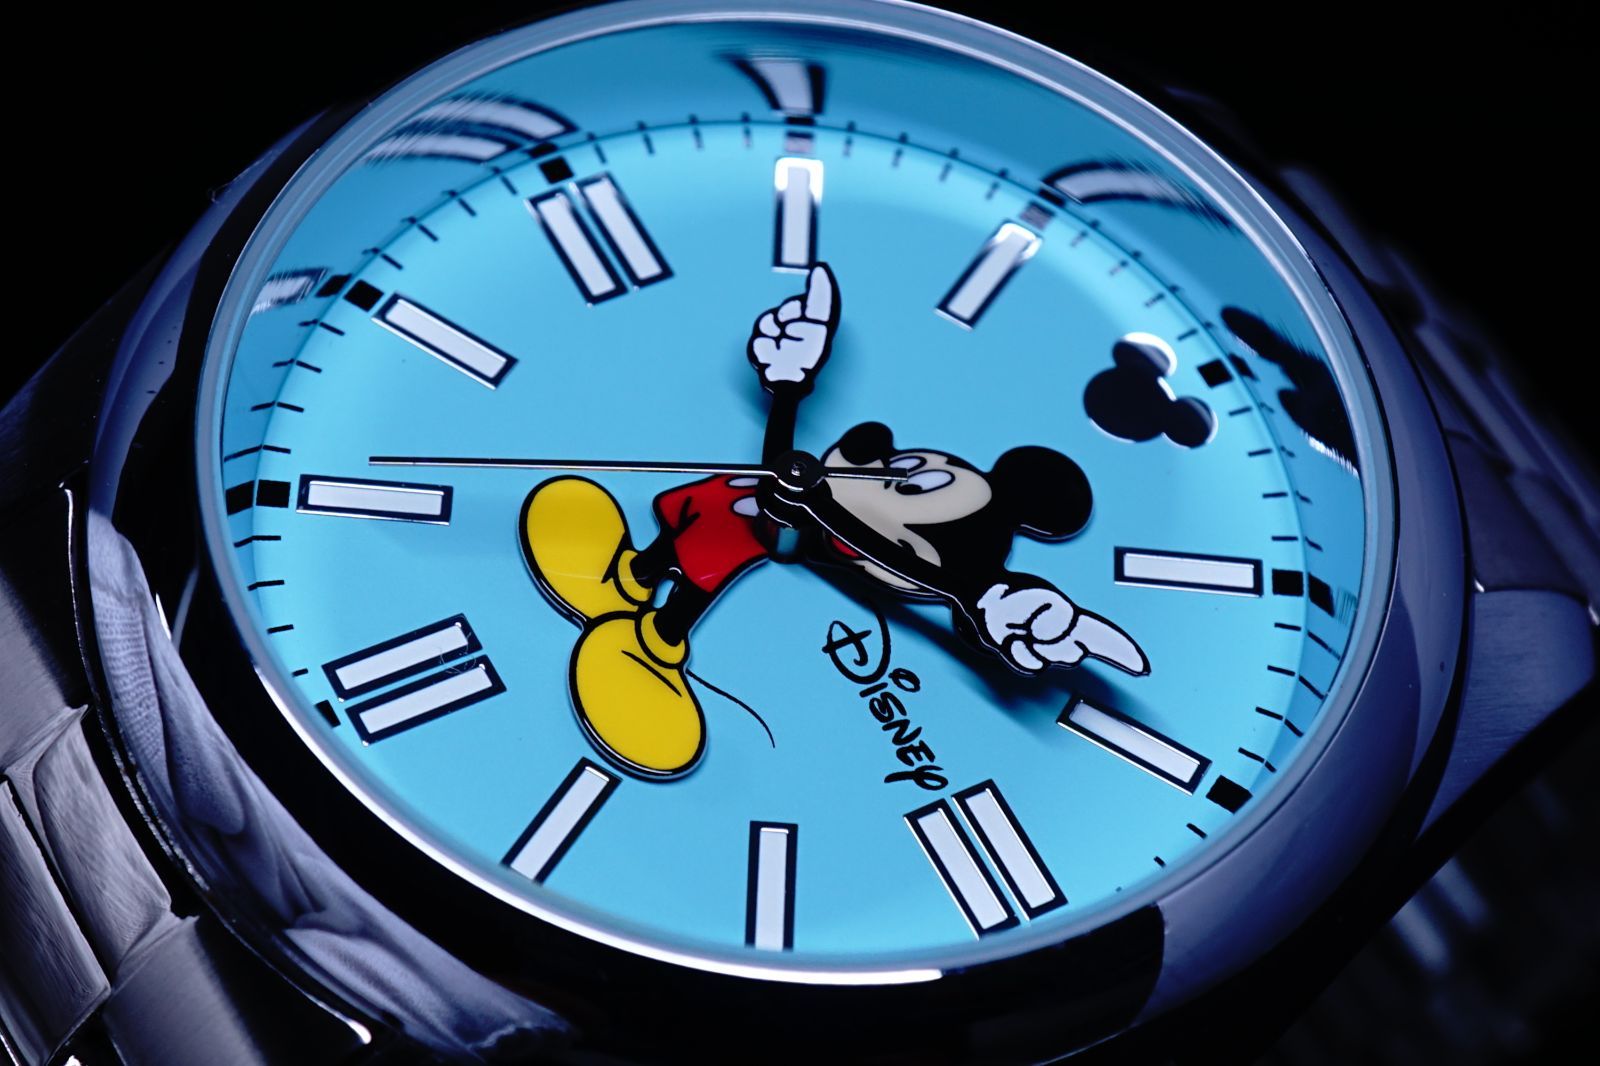 【未使用に近い】ミッキー マウス　腕時計